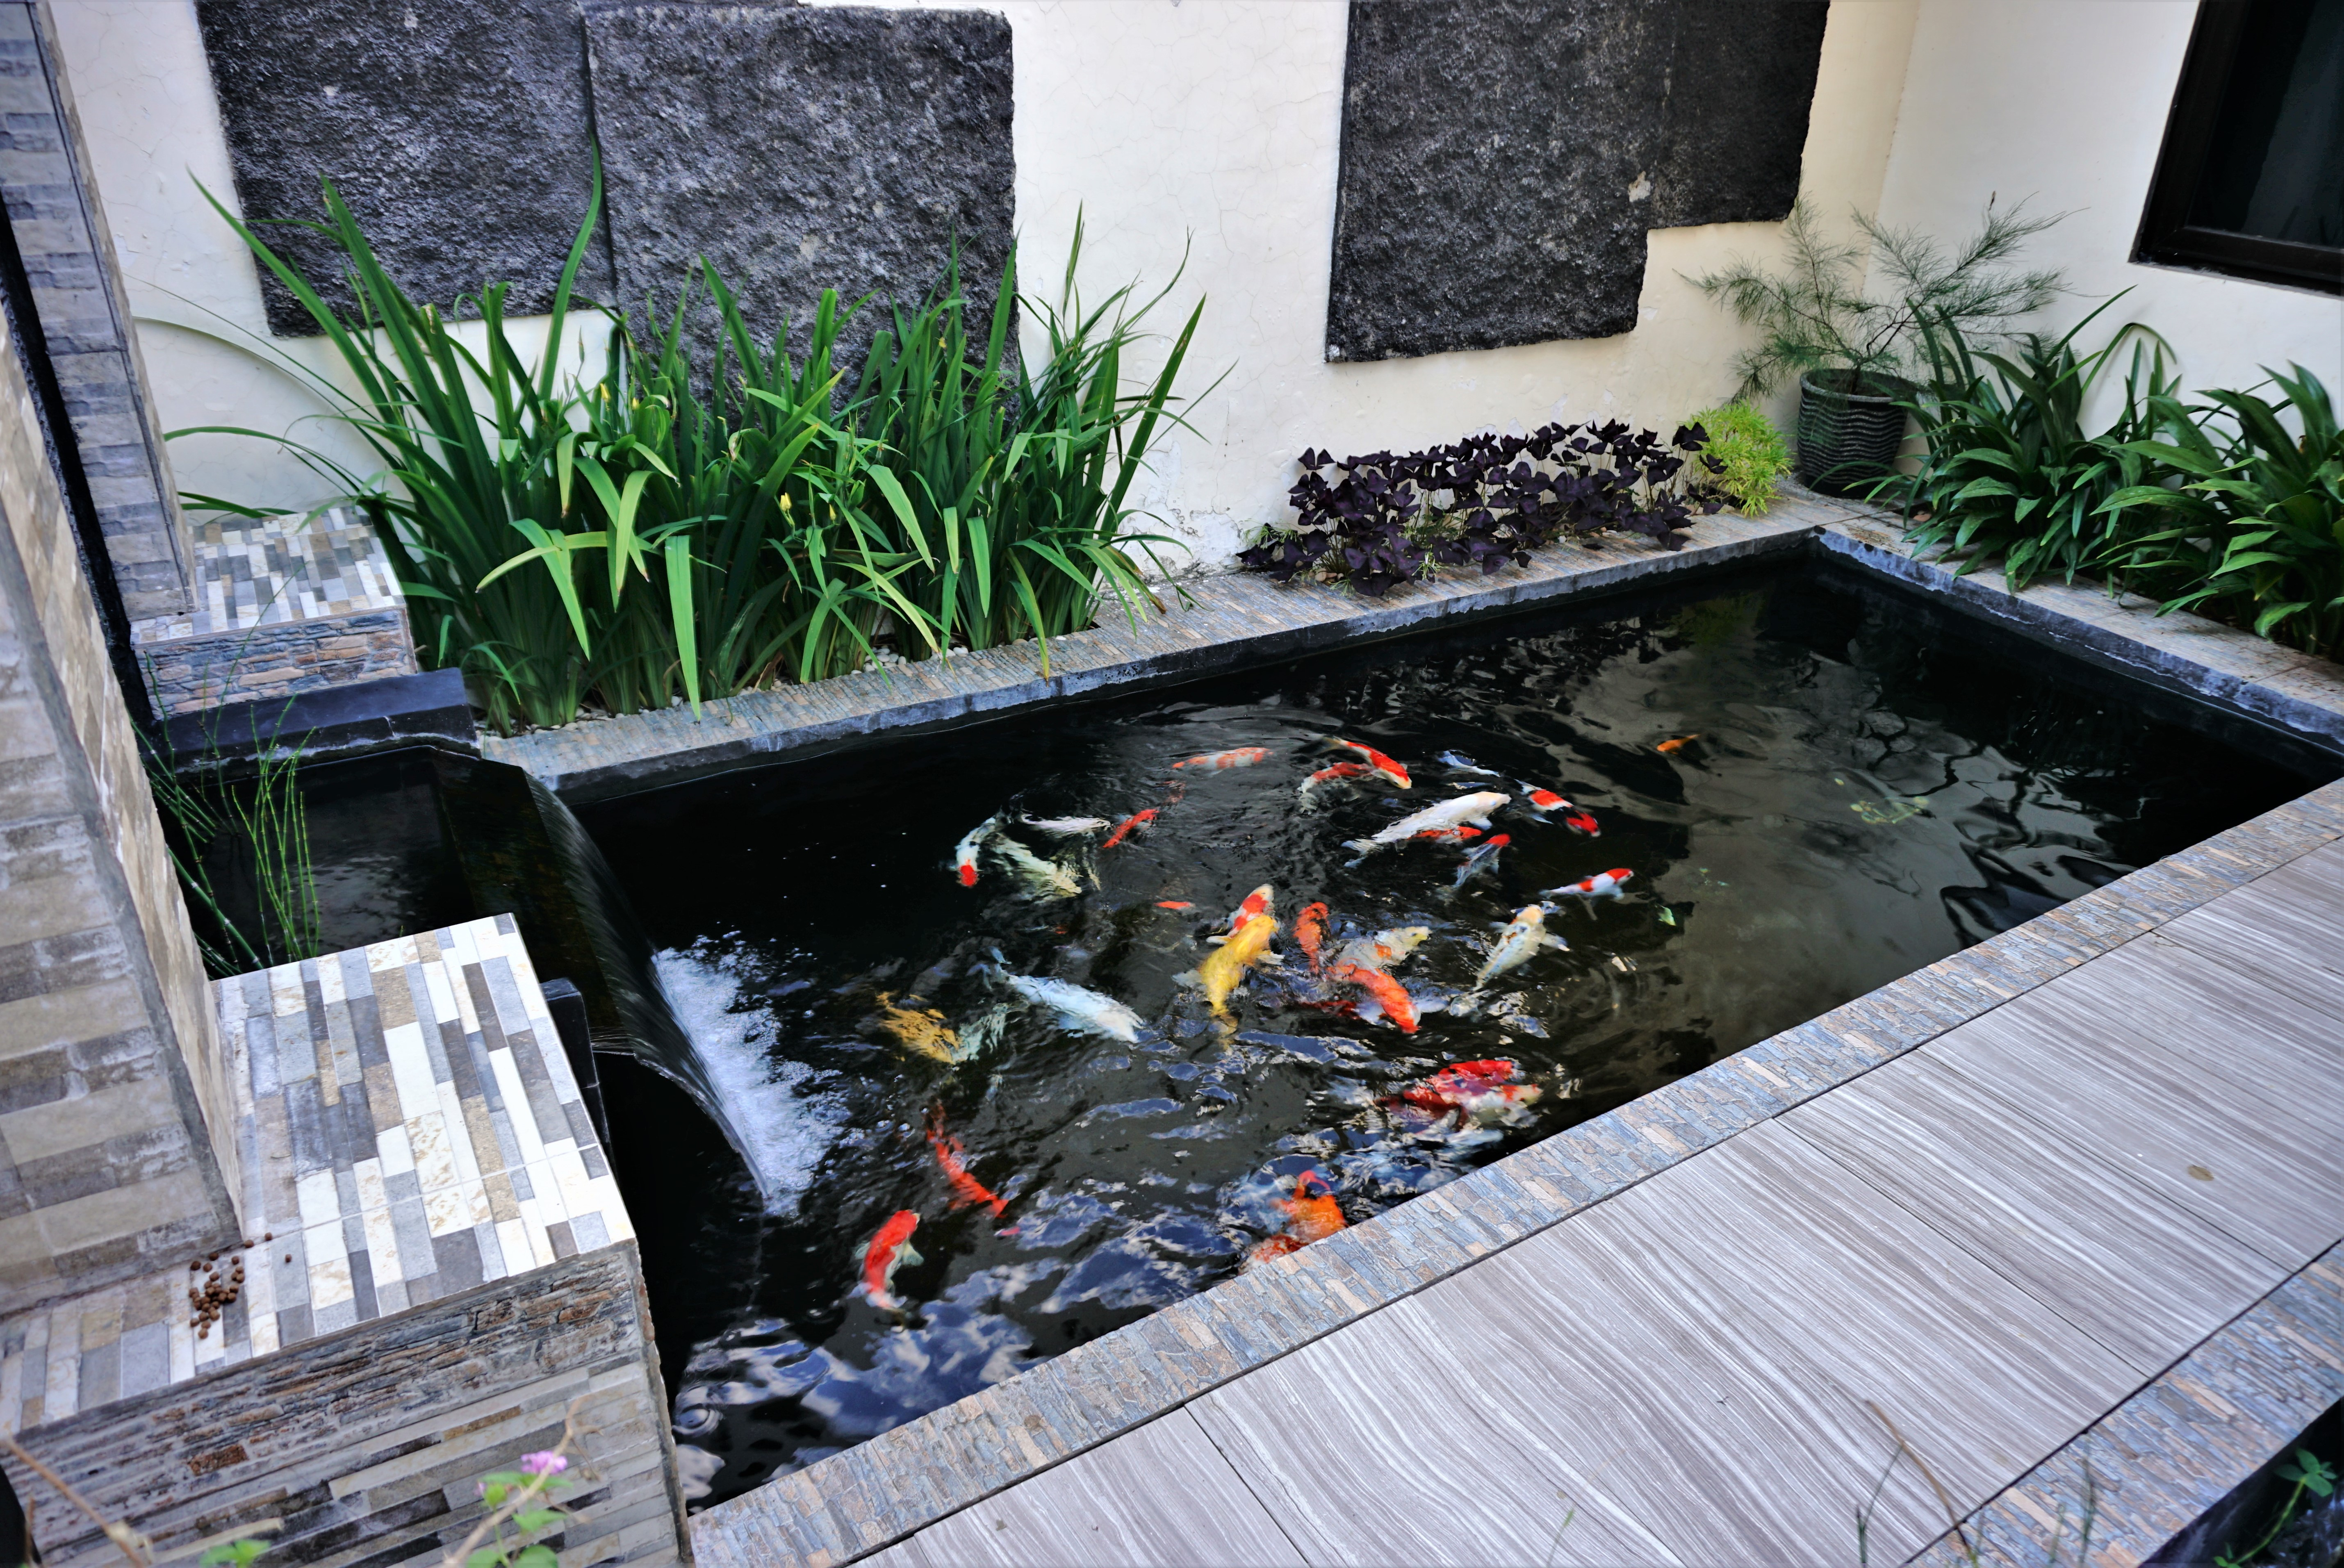 Installer un bassin à poissons dans son jardin : Une bonne idée qui mérite d’être accompagnée.